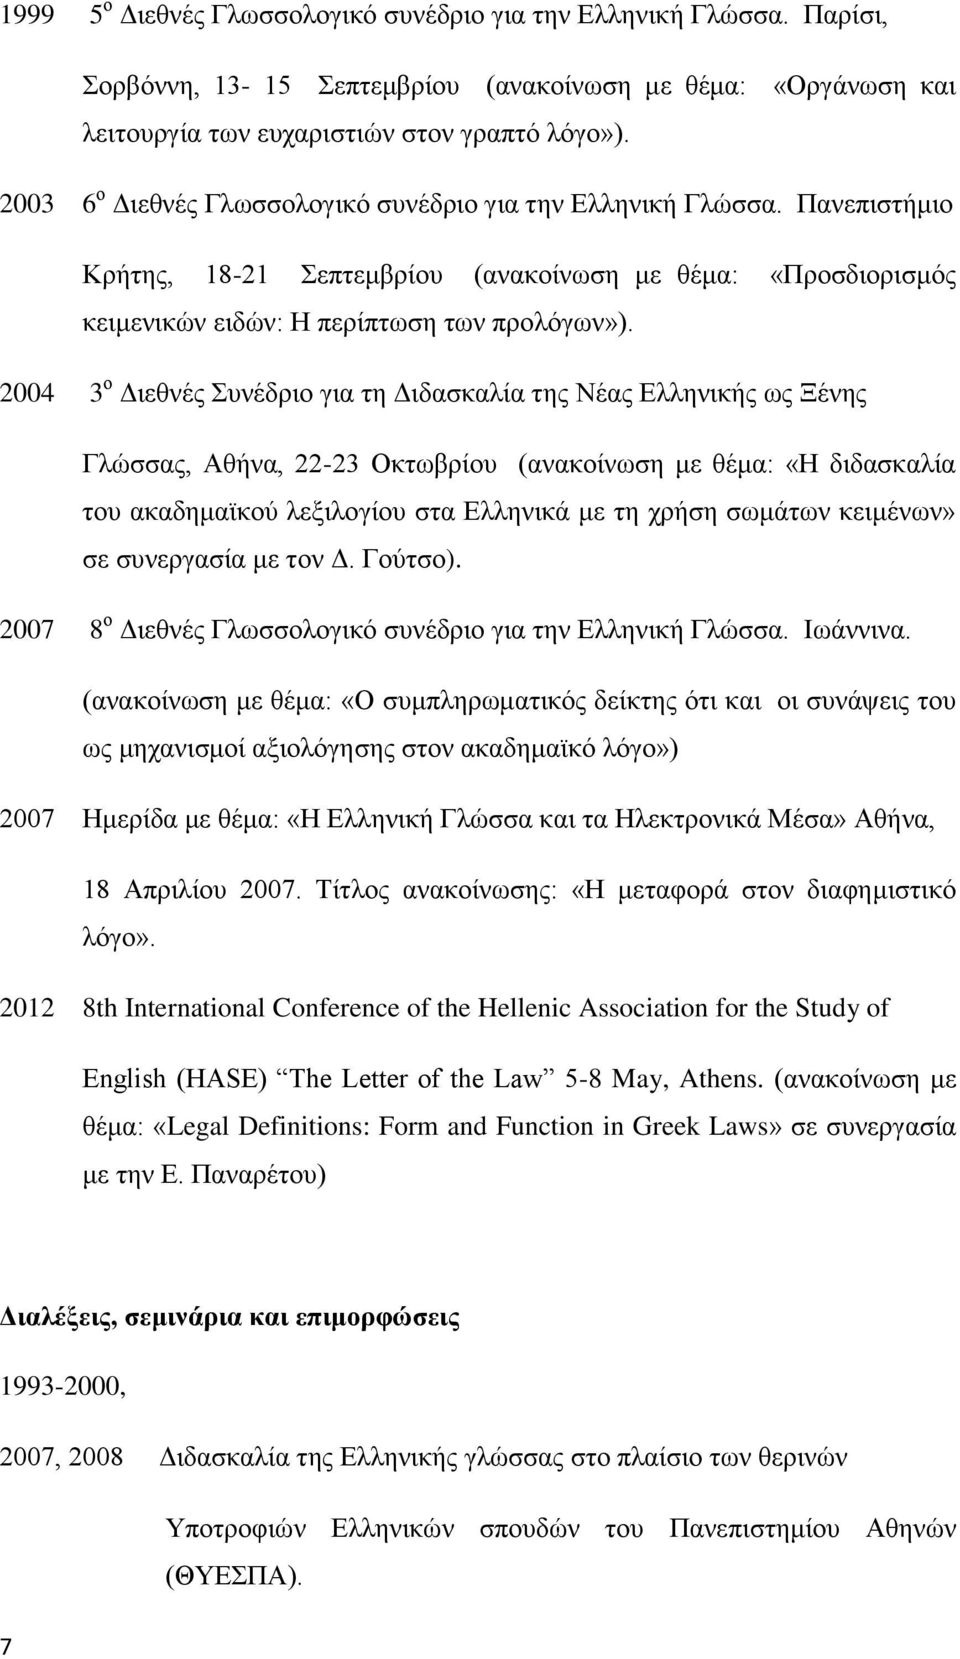 2004 3 ο Διεθνές Συνέδριο για τη Διδασκαλία της Νέας Ελληνικής ως Ξένης Γλώσσας, Αθήνα, 22-23 Οκτωβρίου (ανακοίνωση με θέμα: «Η διδασκαλία του ακαδημαϊκού λεξιλογίου στα Ελληνικά με τη χρήση σωμάτων